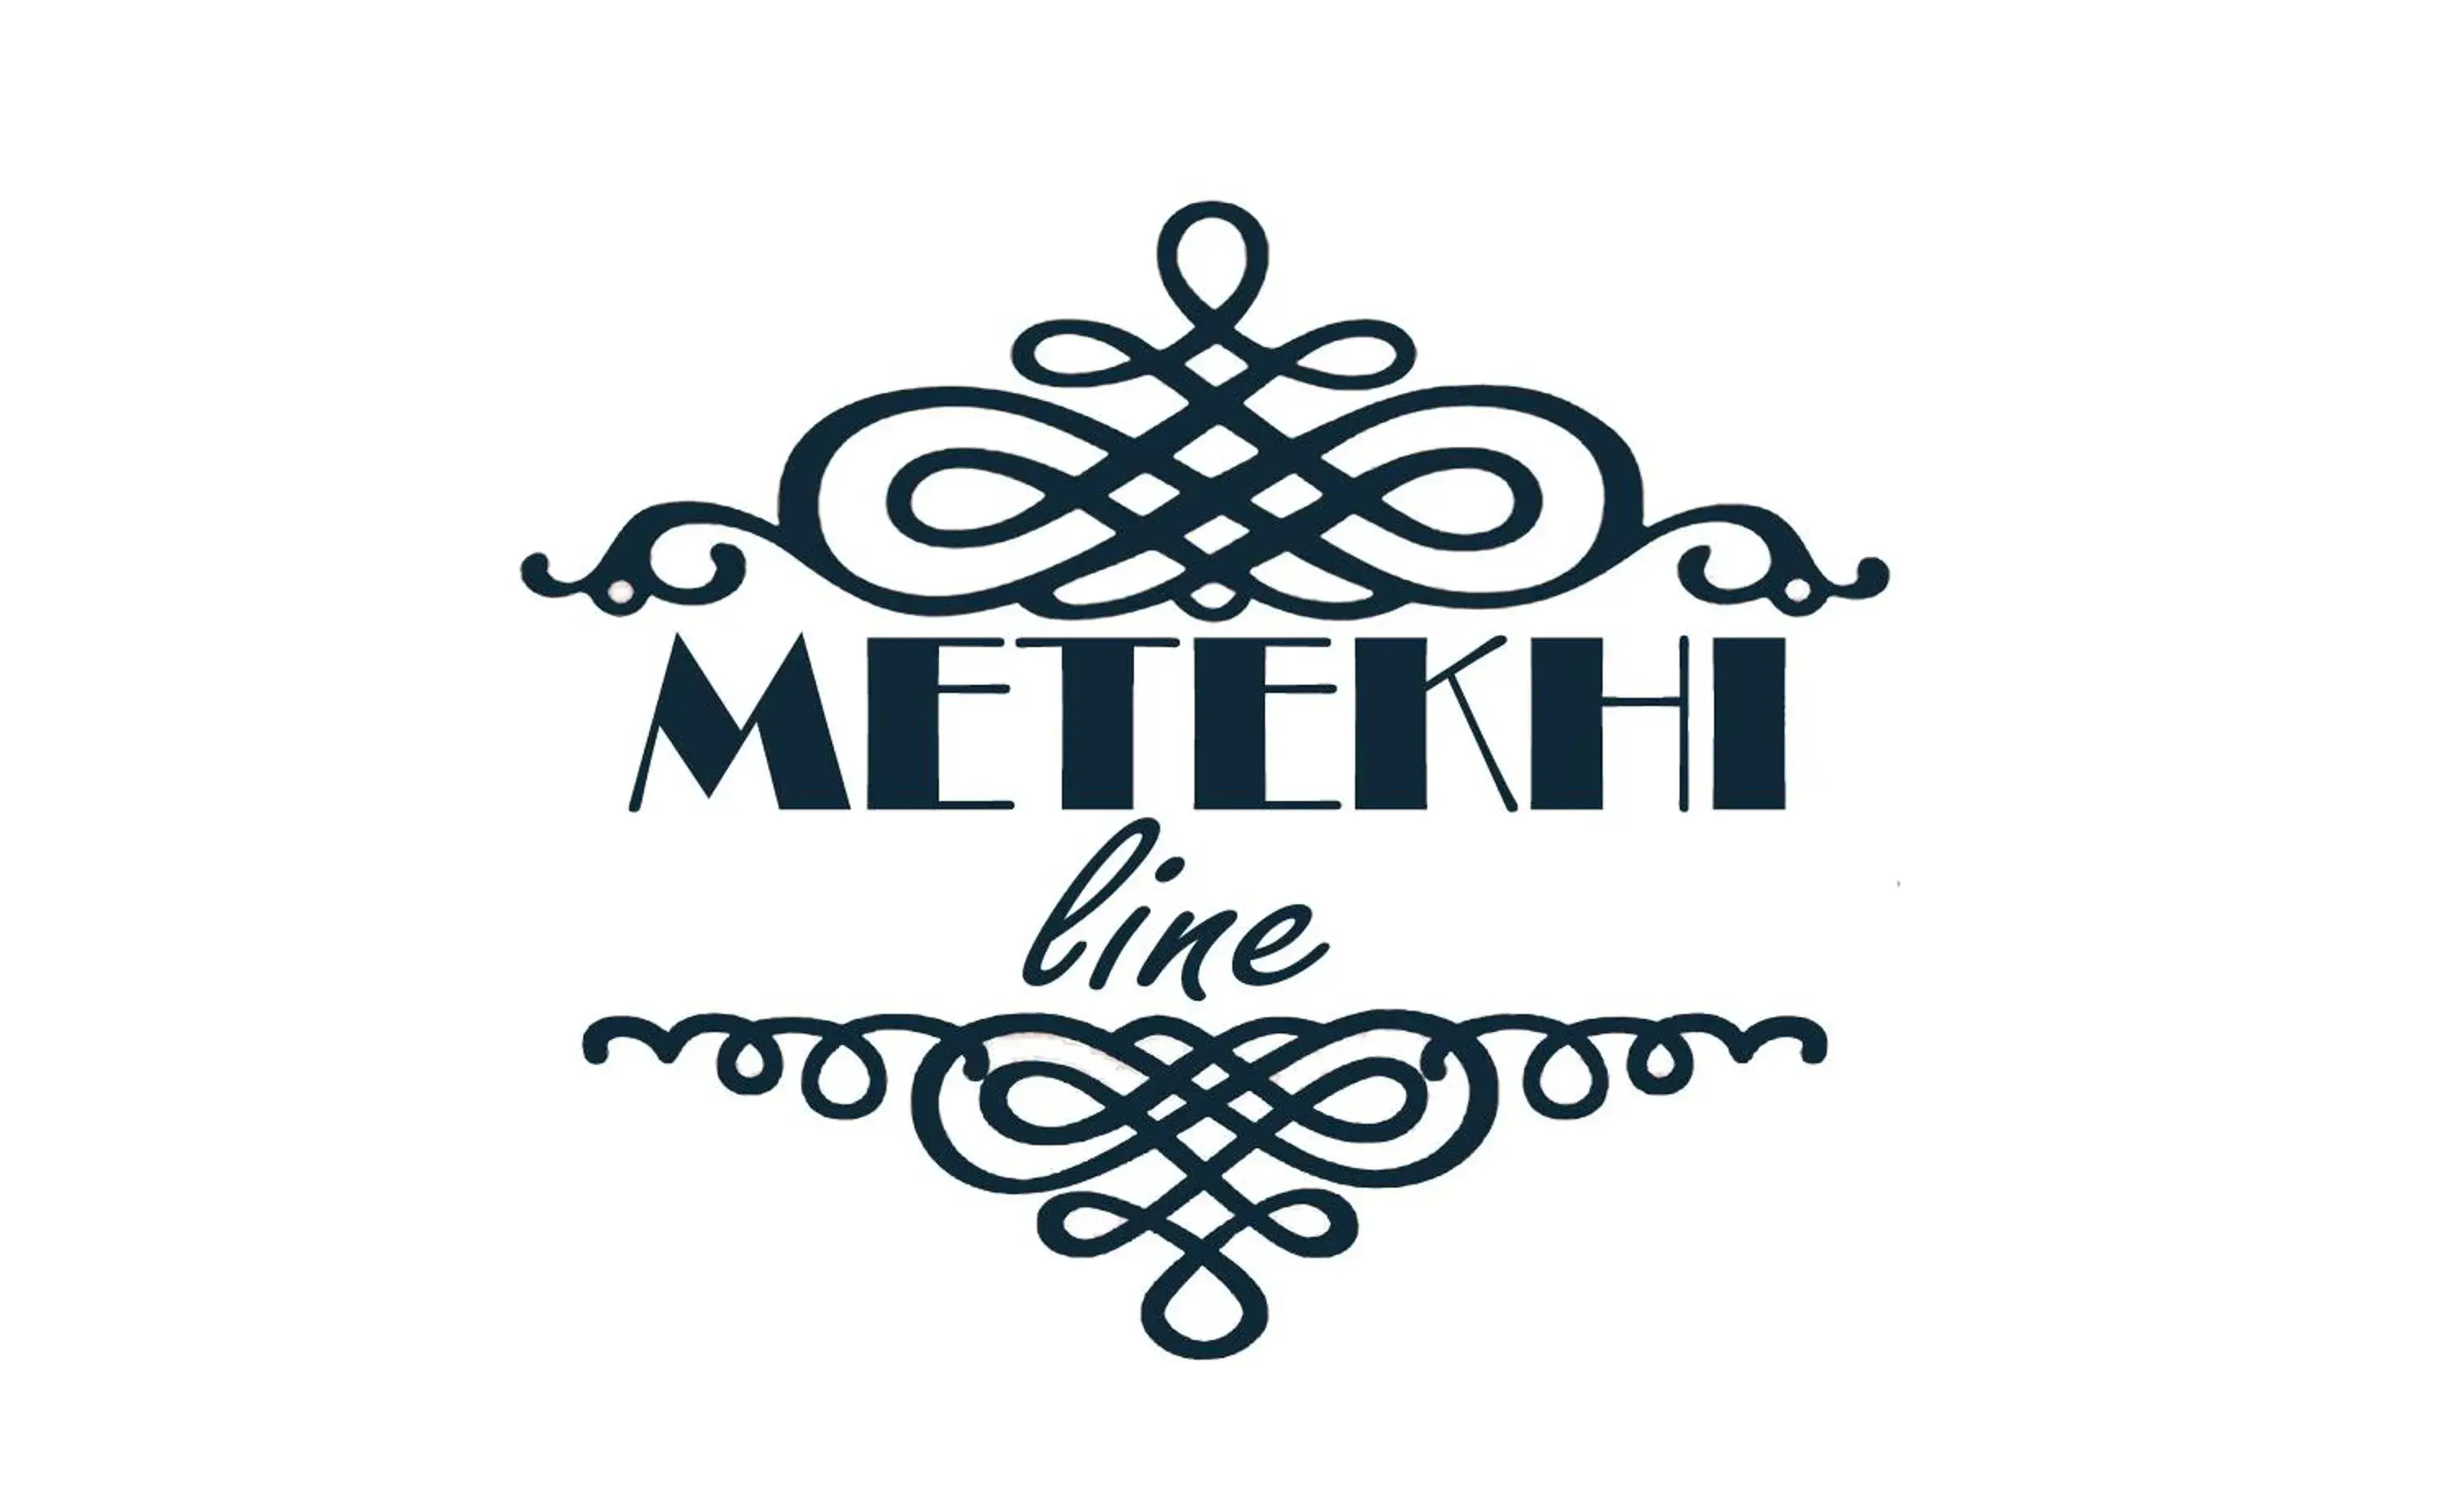 Property logo or sign in Hotel Metekhi Line